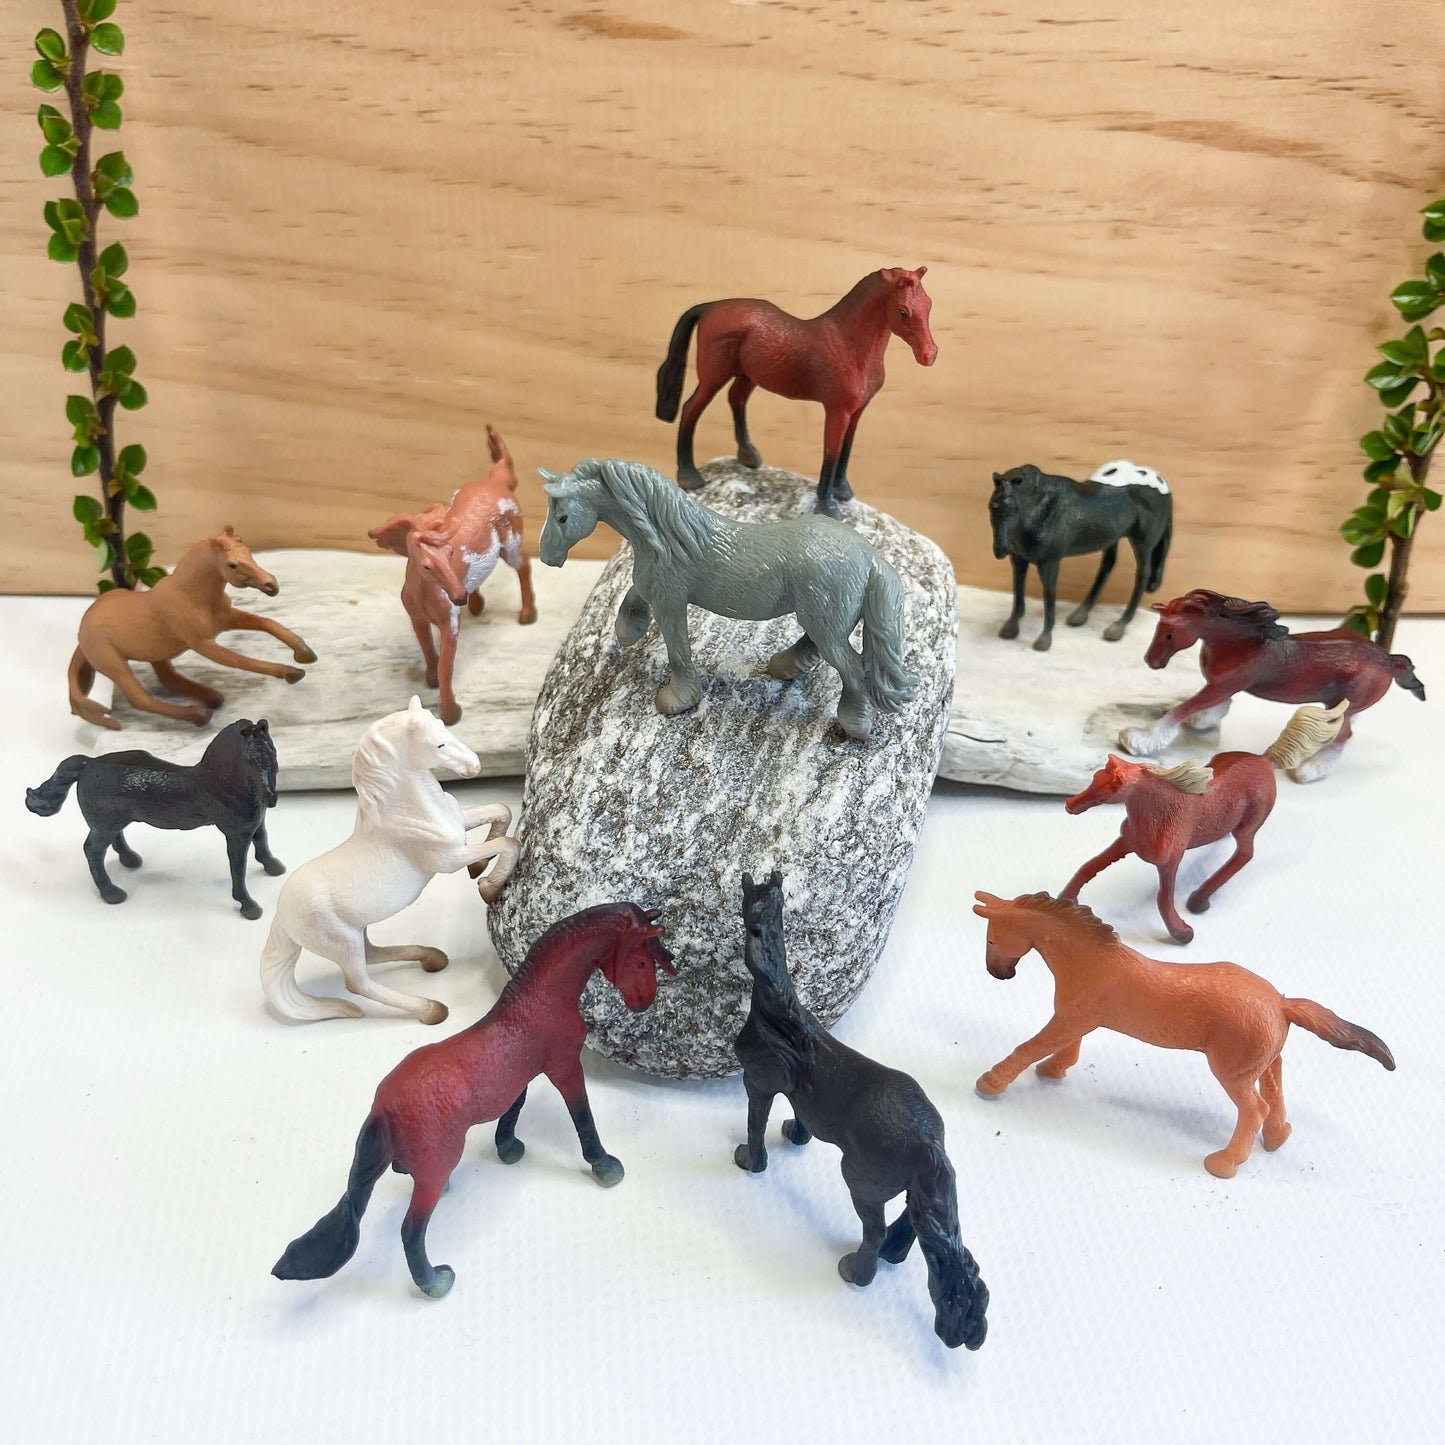 Mini horse figurines.